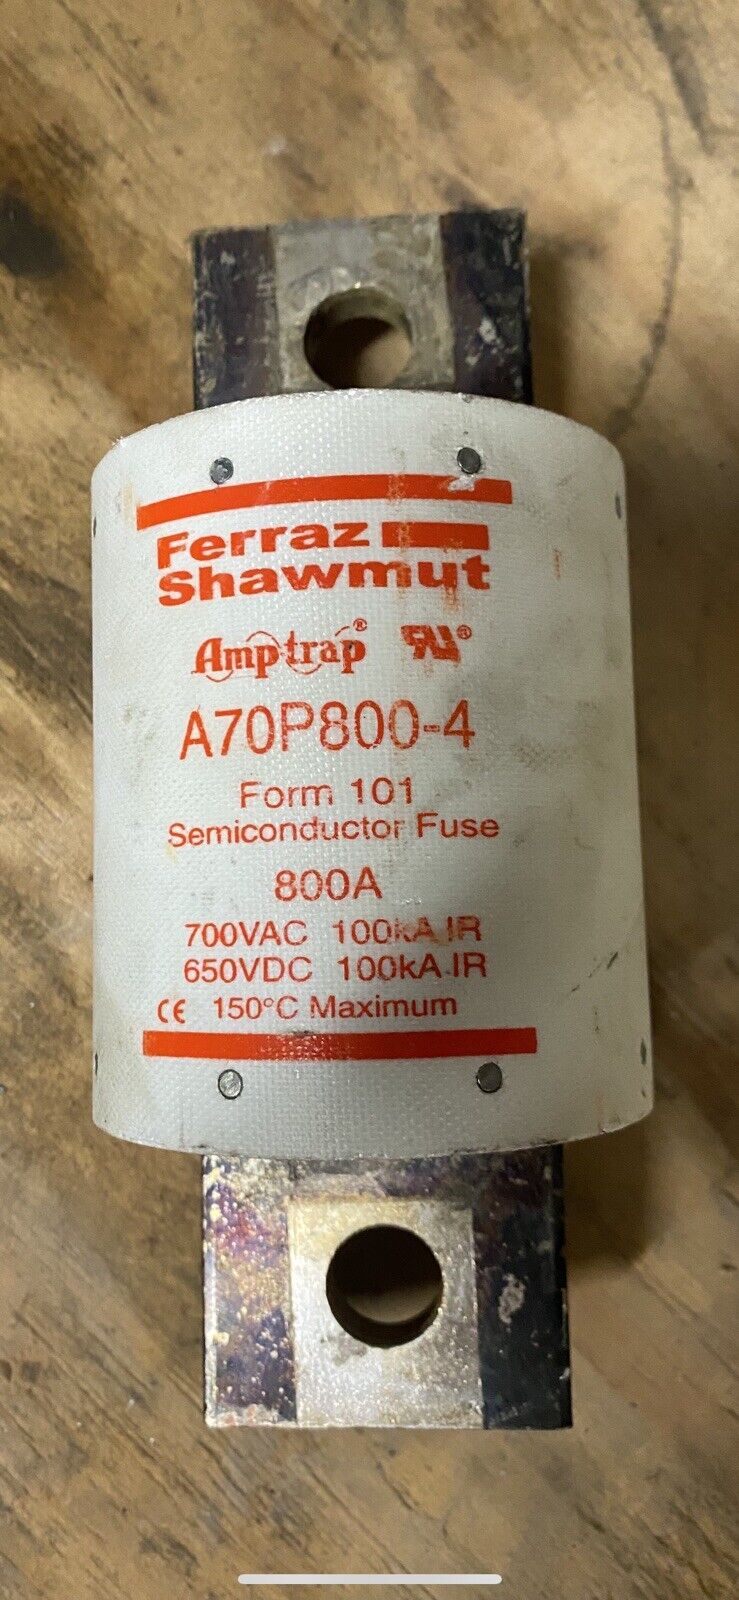 Ferraz Shawmut A70P800-4 Semiconductor Fuse